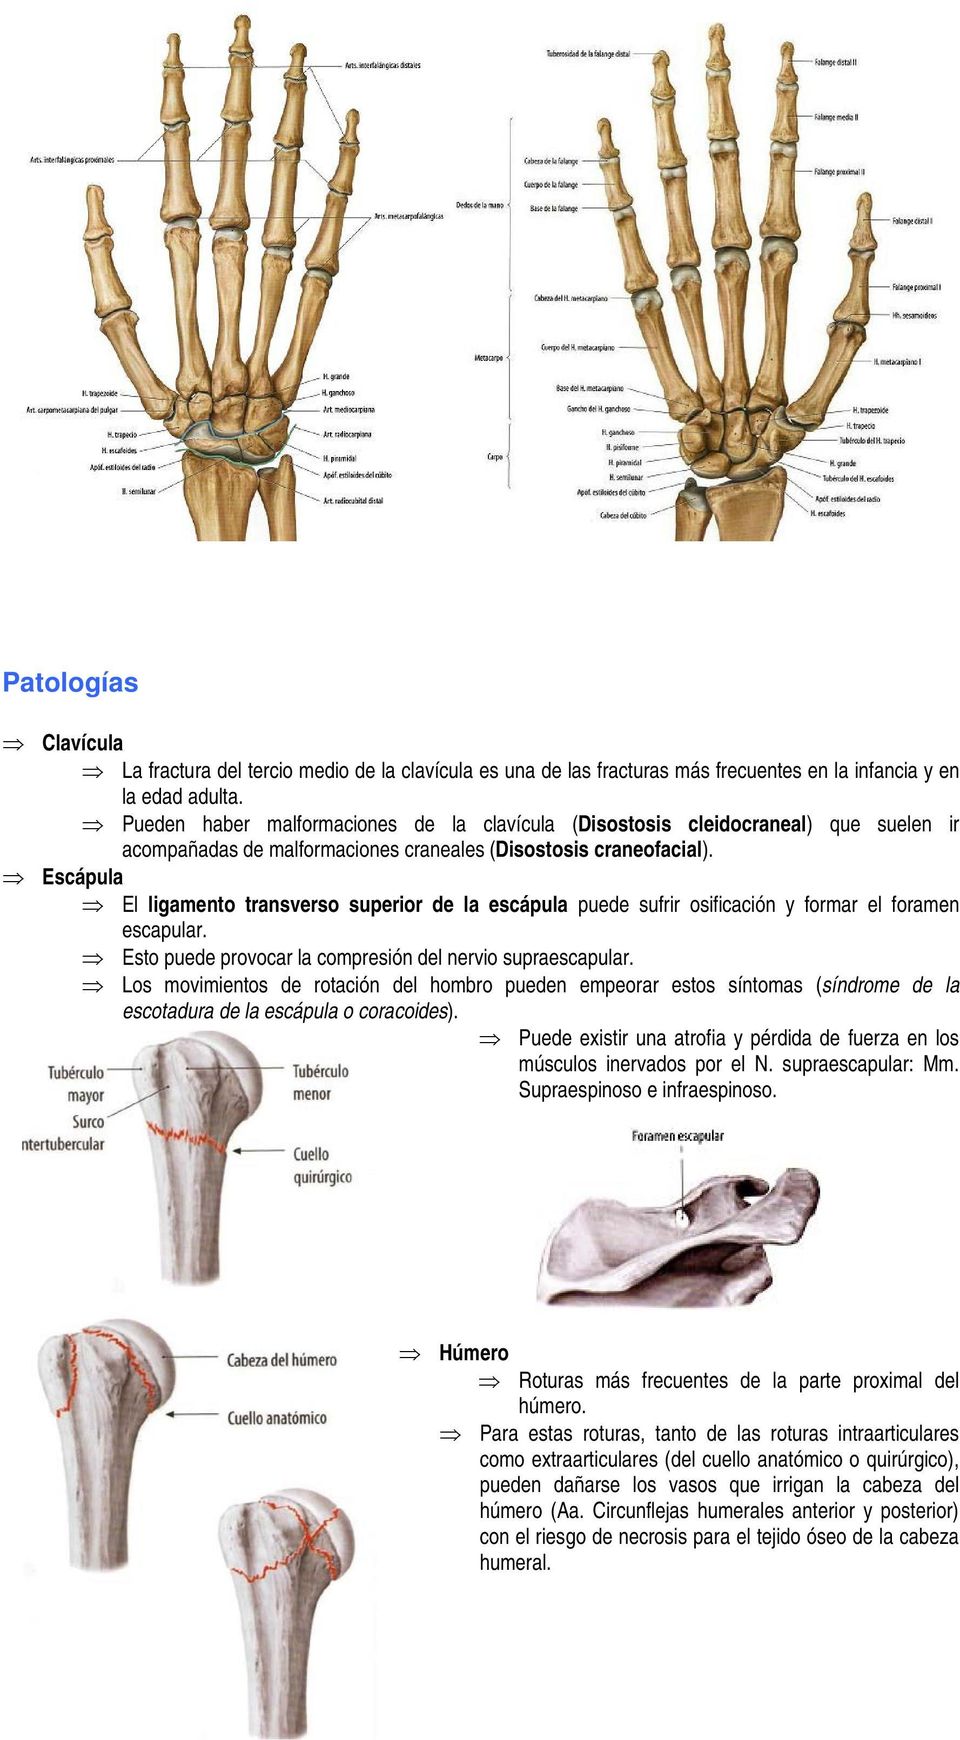 Escápula El ligamento transverso superior de la escápula puede sufrir osificación y formar el foramen escapular. Esto puede provocar la compresión del nervio supraescapular.